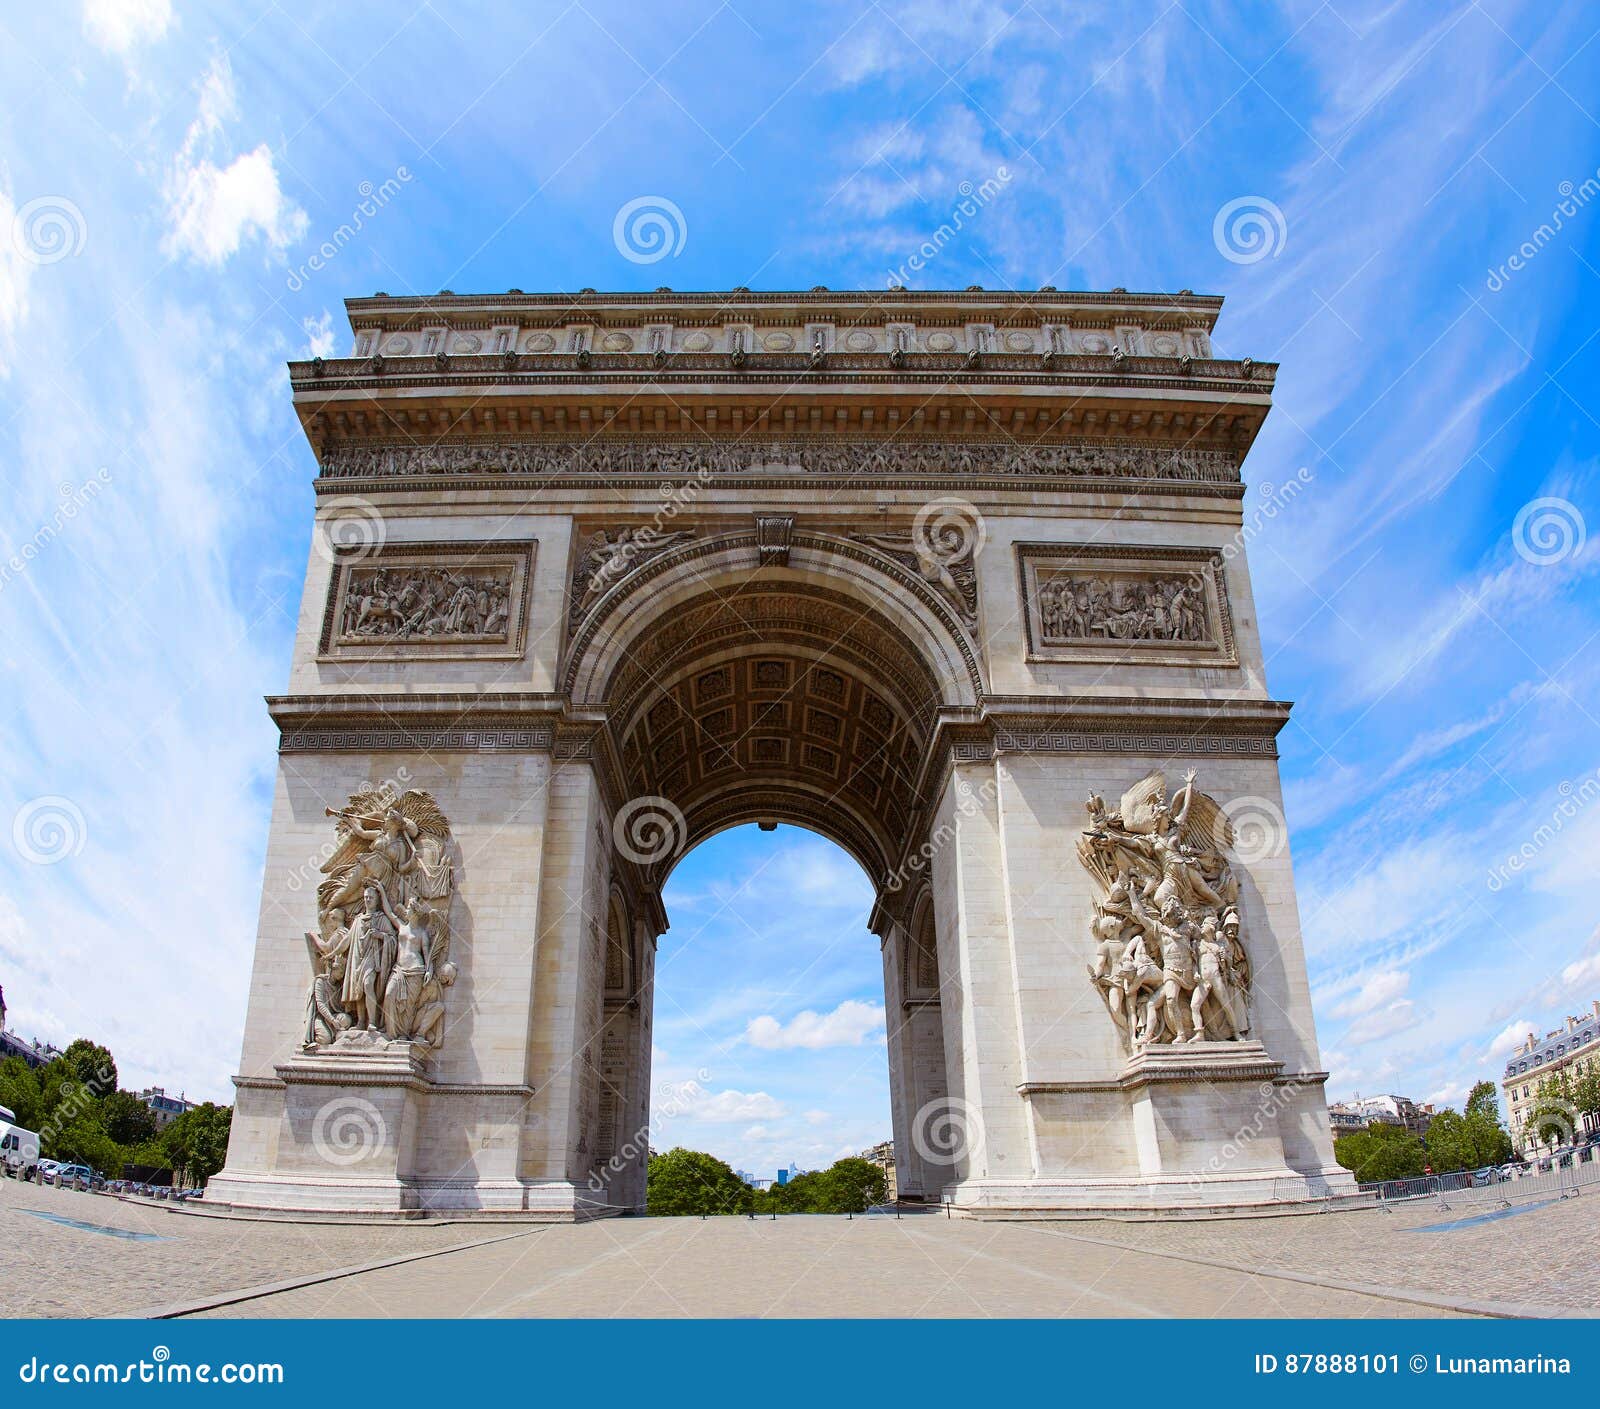 arc de triomphe in paris arch of triumph